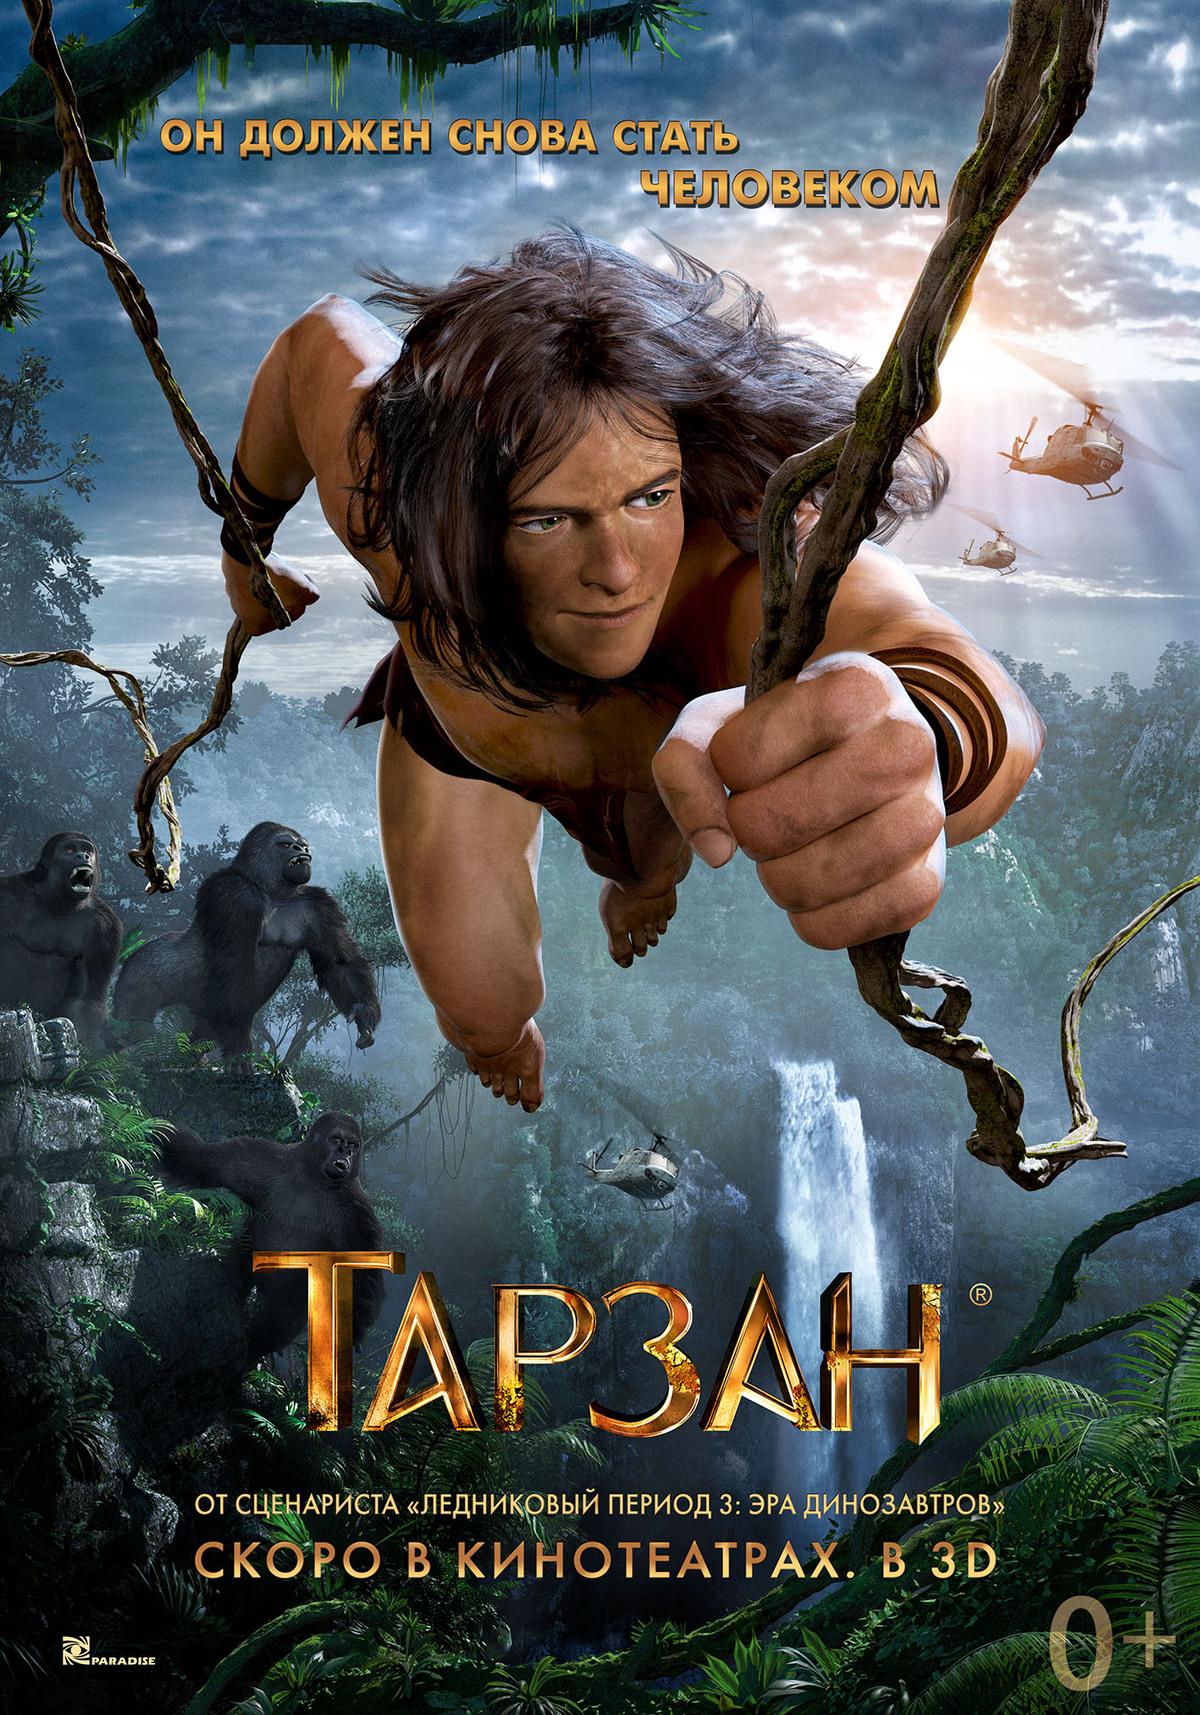 Второй дублированный тизер мультфильма "Тарзан"